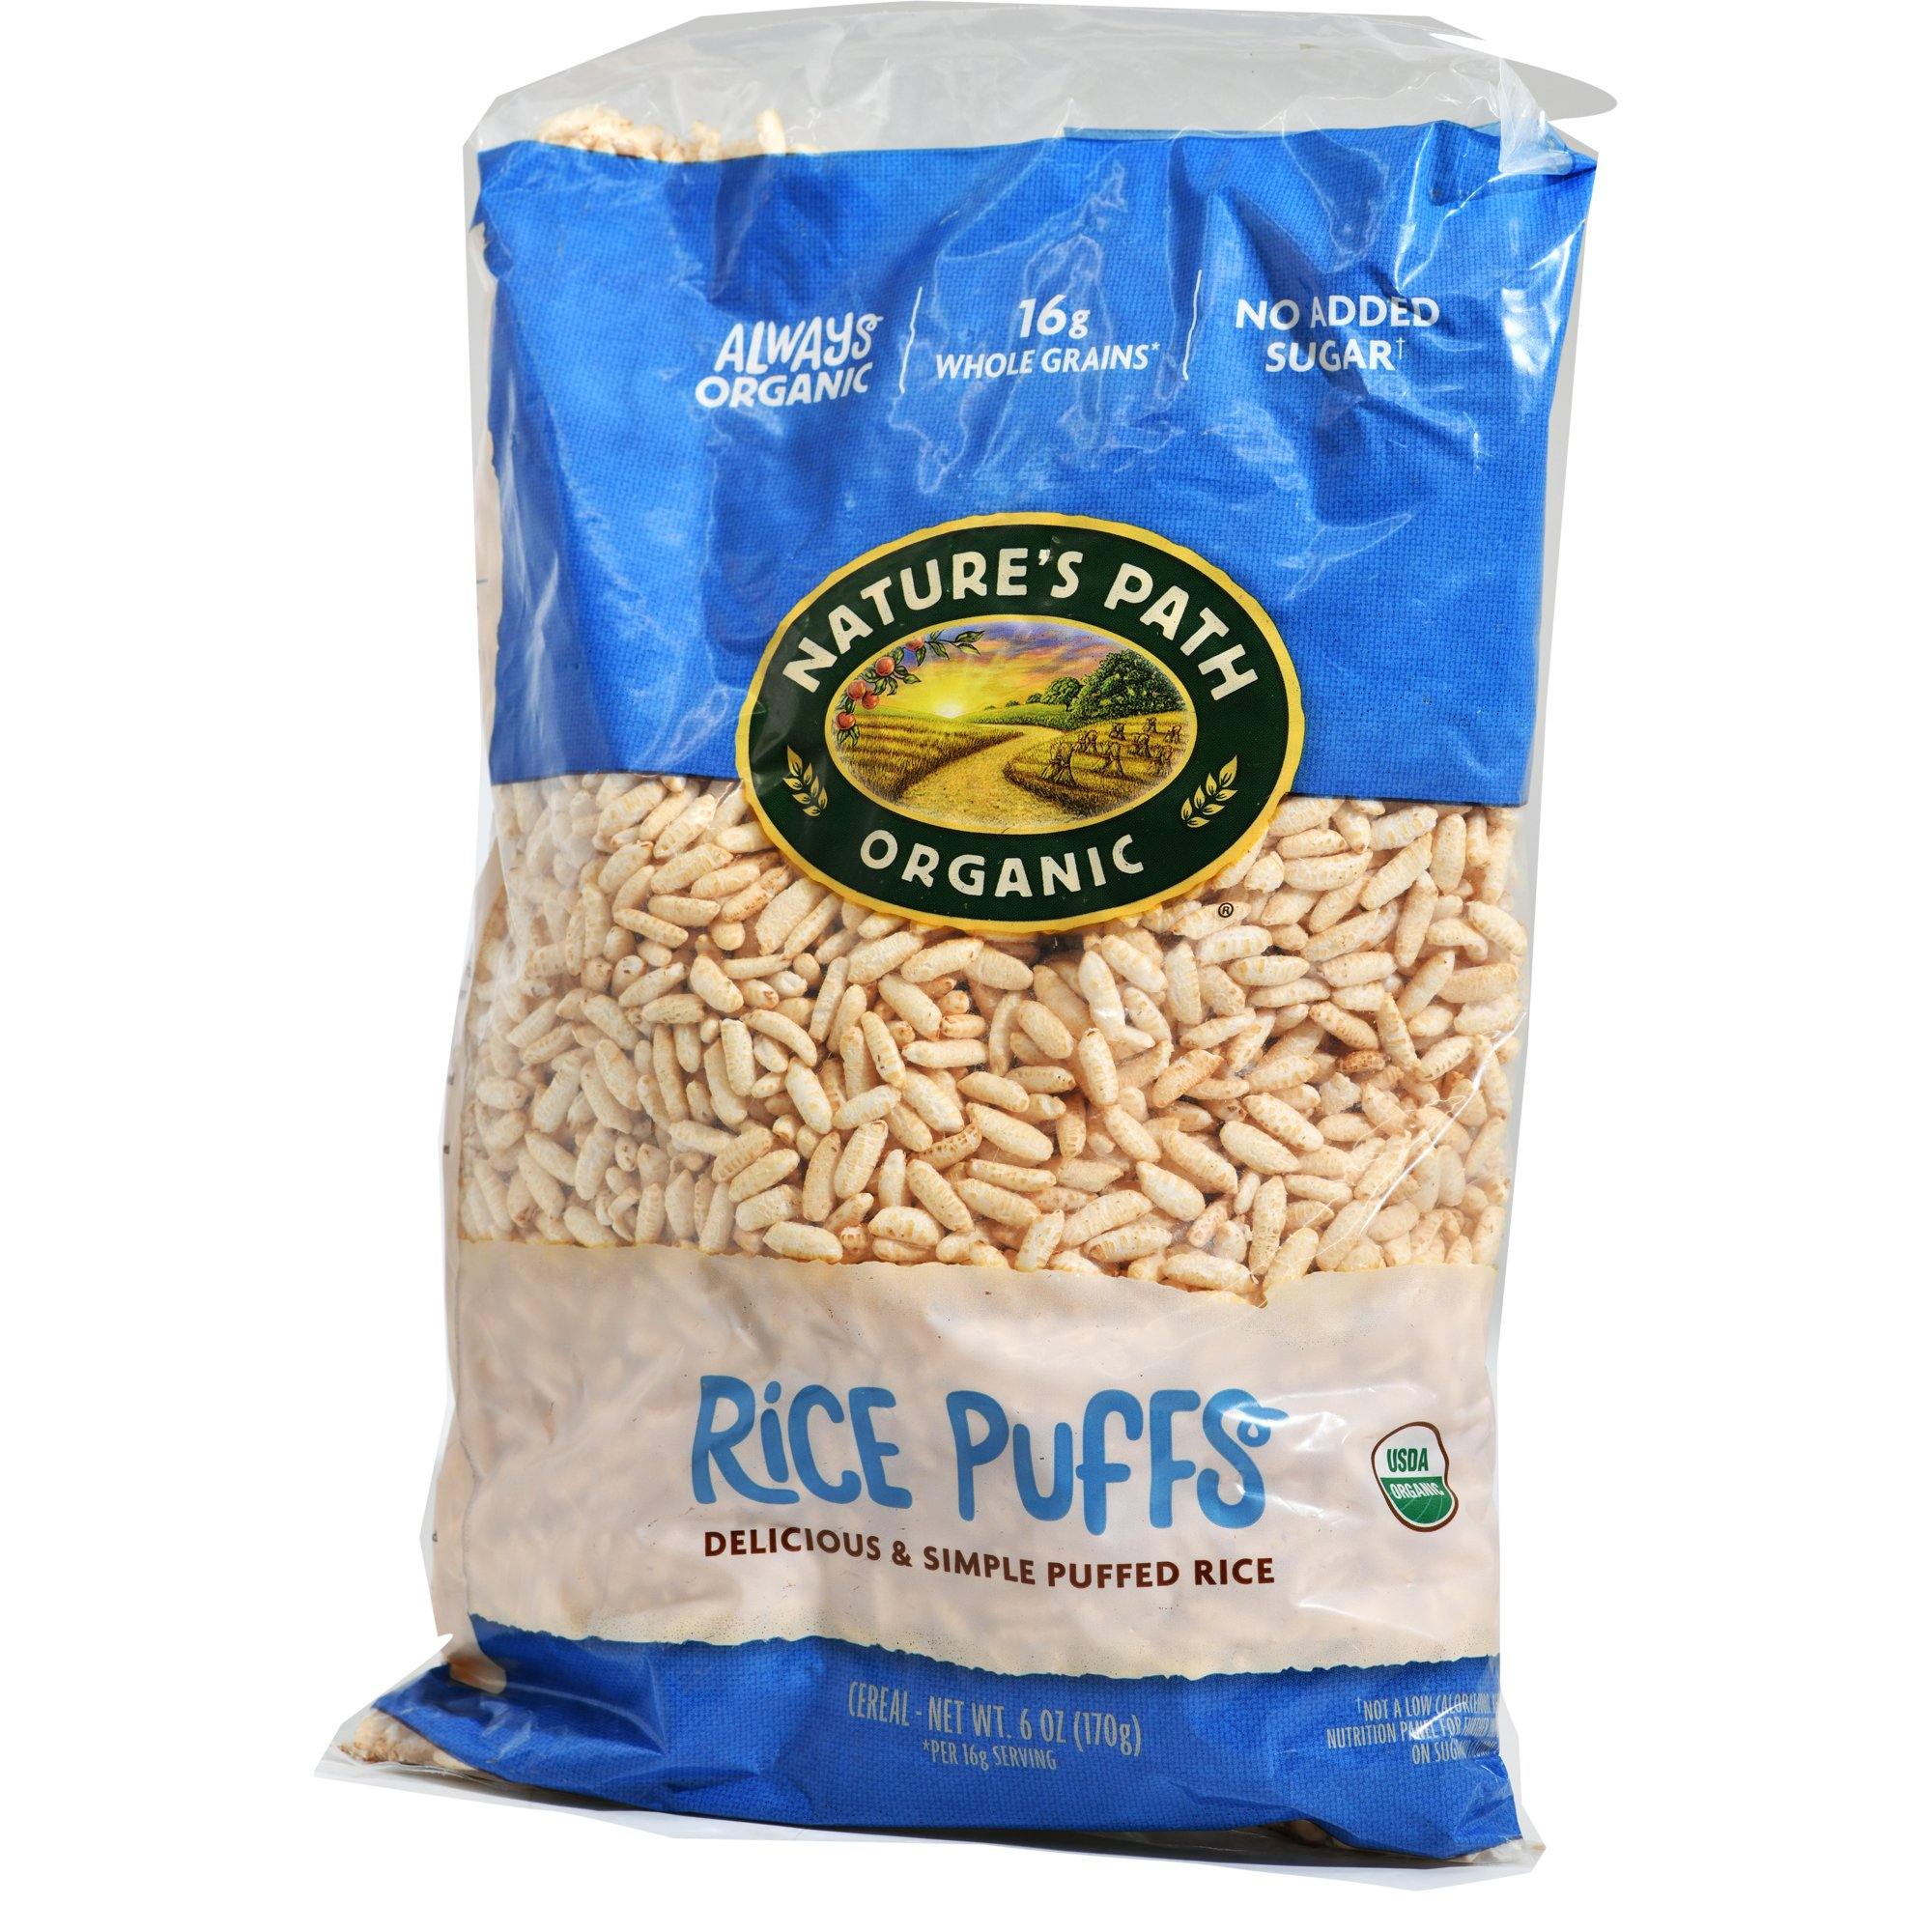 سناك ارز منفوخ بدون سكر  العضوي من نيتشر باث - الغذاء الحيوي